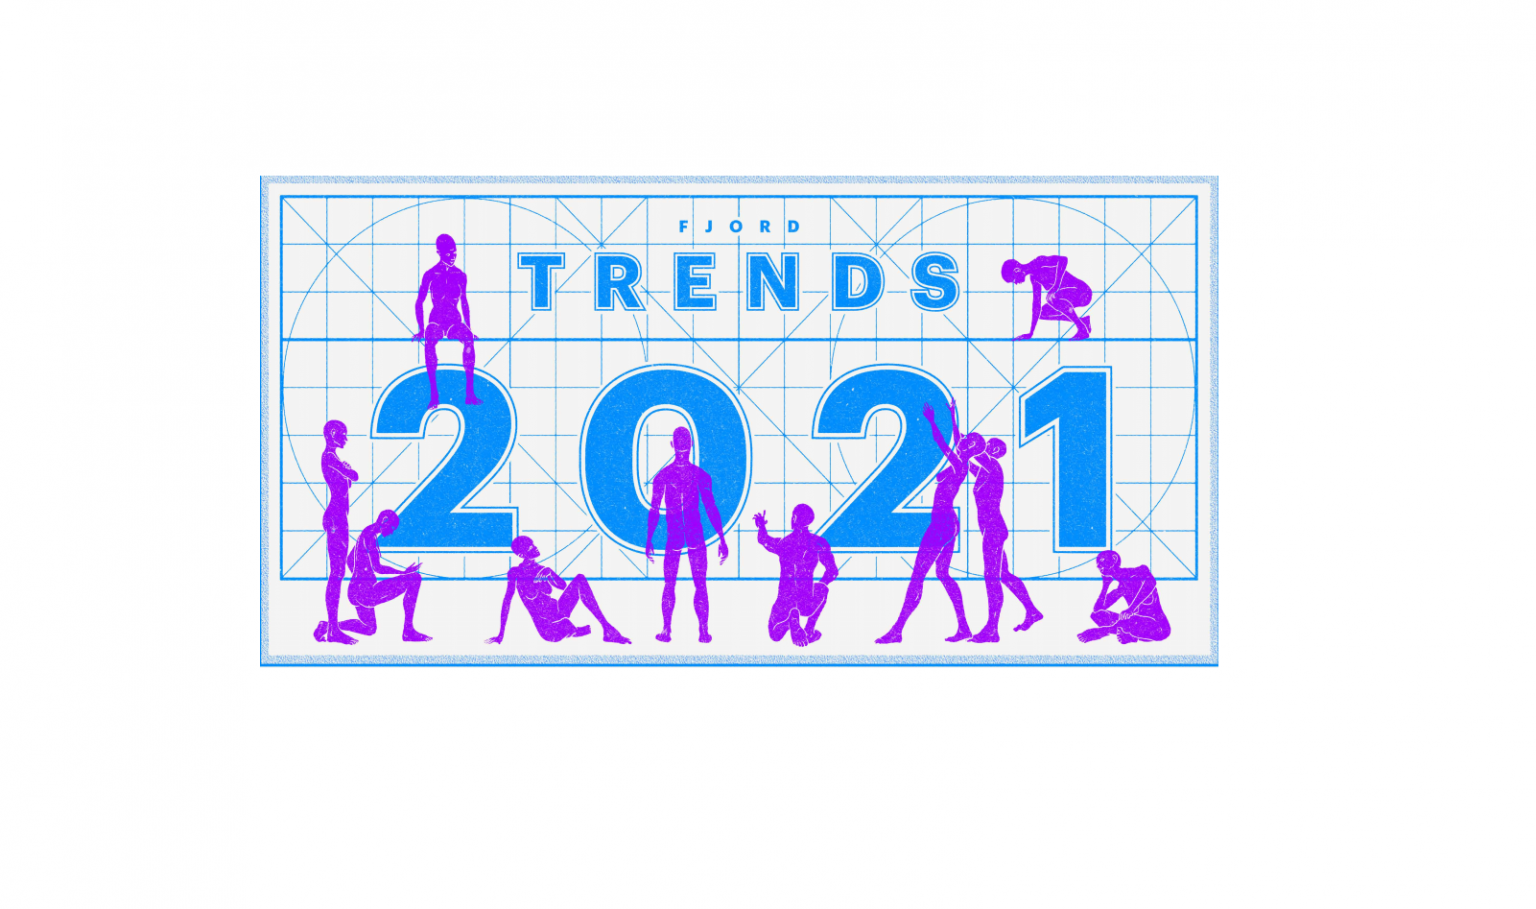 Trends 2021